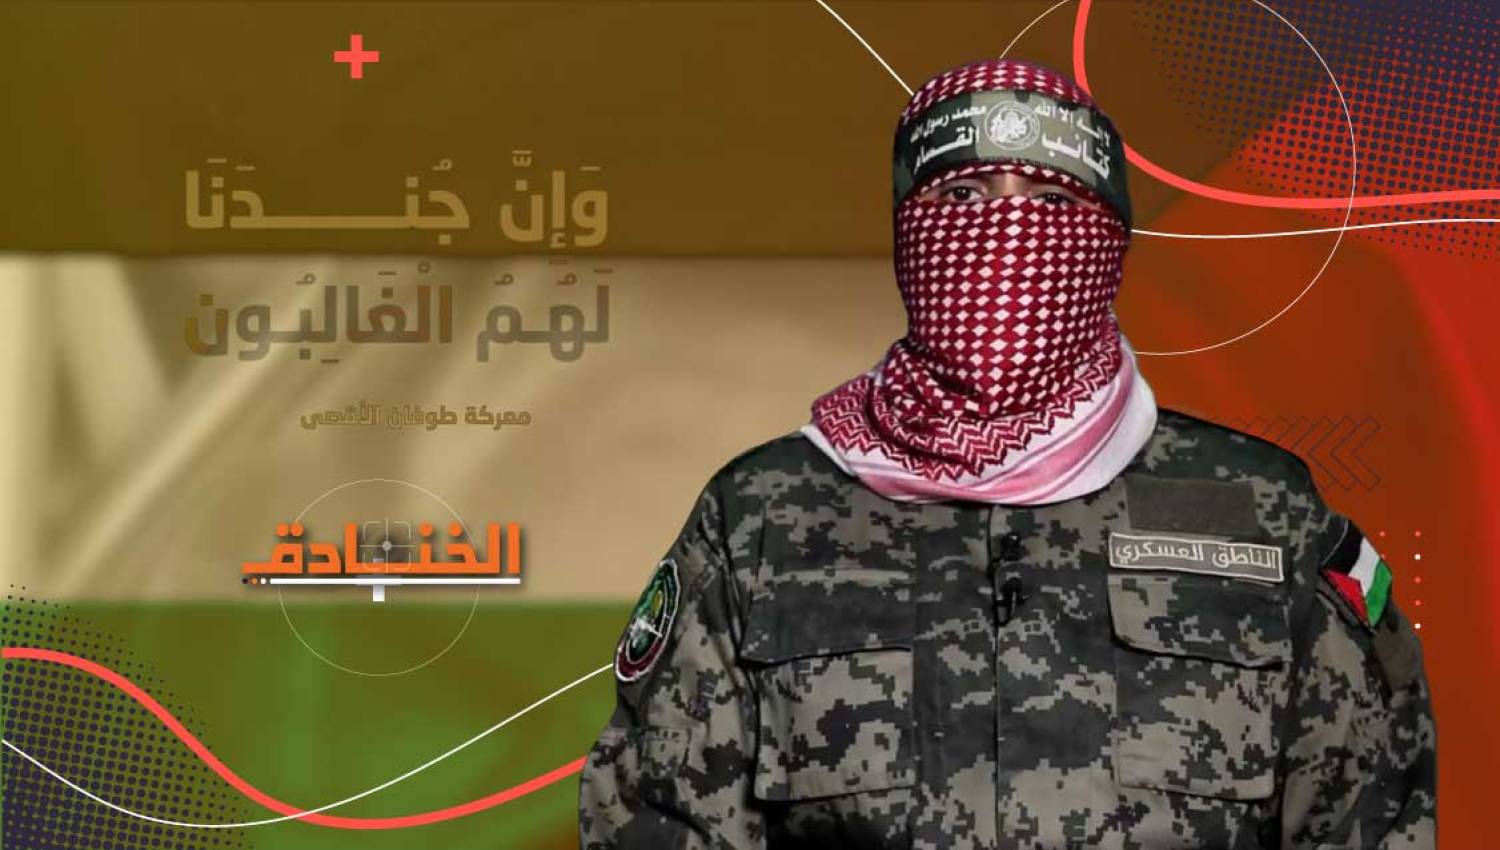 أبو عبيدة: قائد الجبهة الإعلامية حتى النصر أو الشهادة